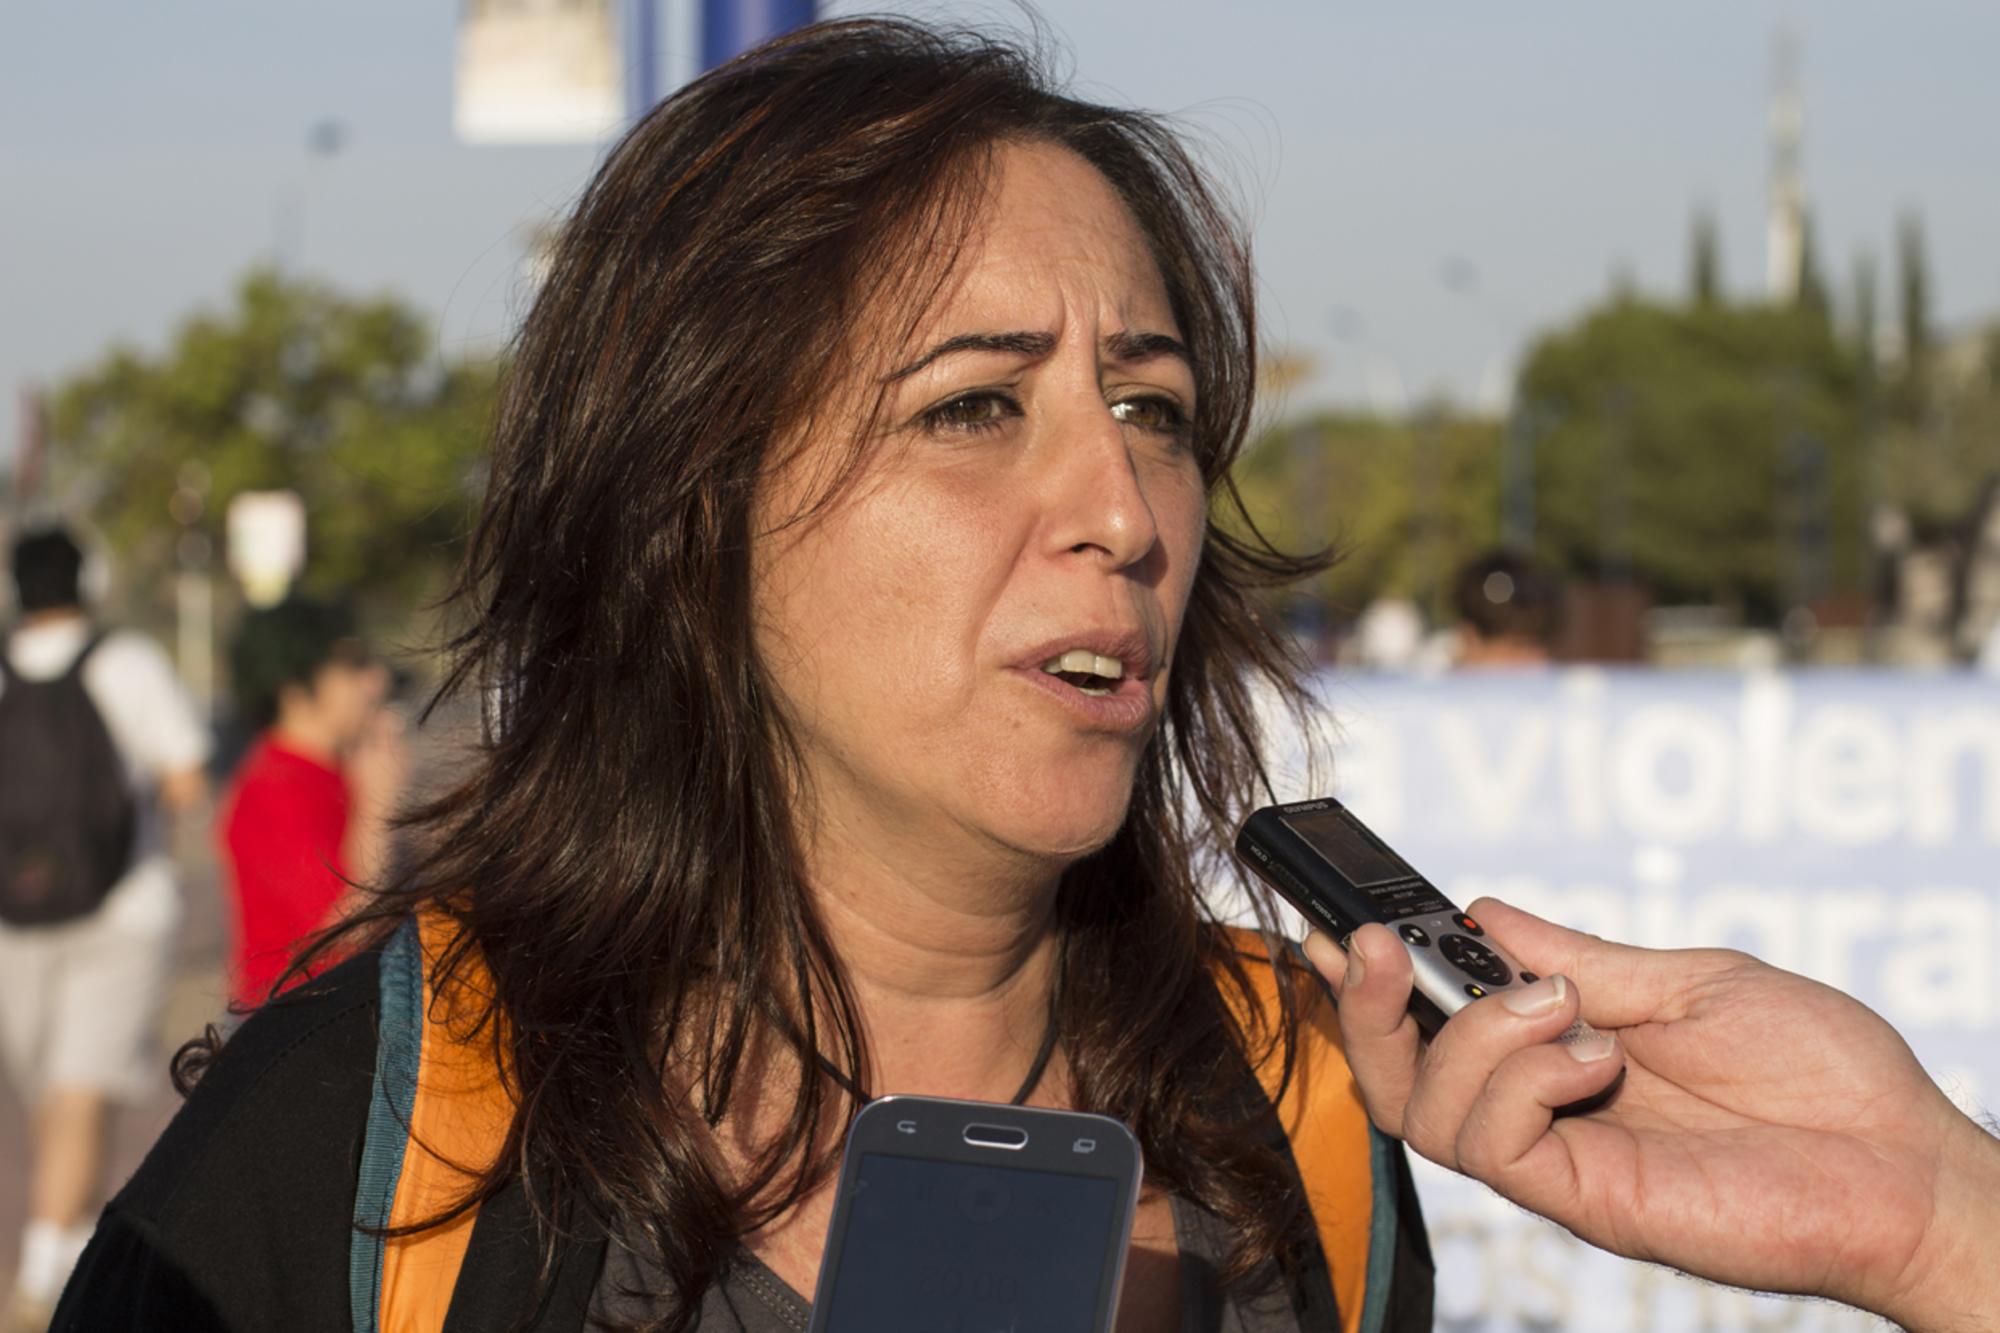 Cristina Honorato, Participa Sevilla